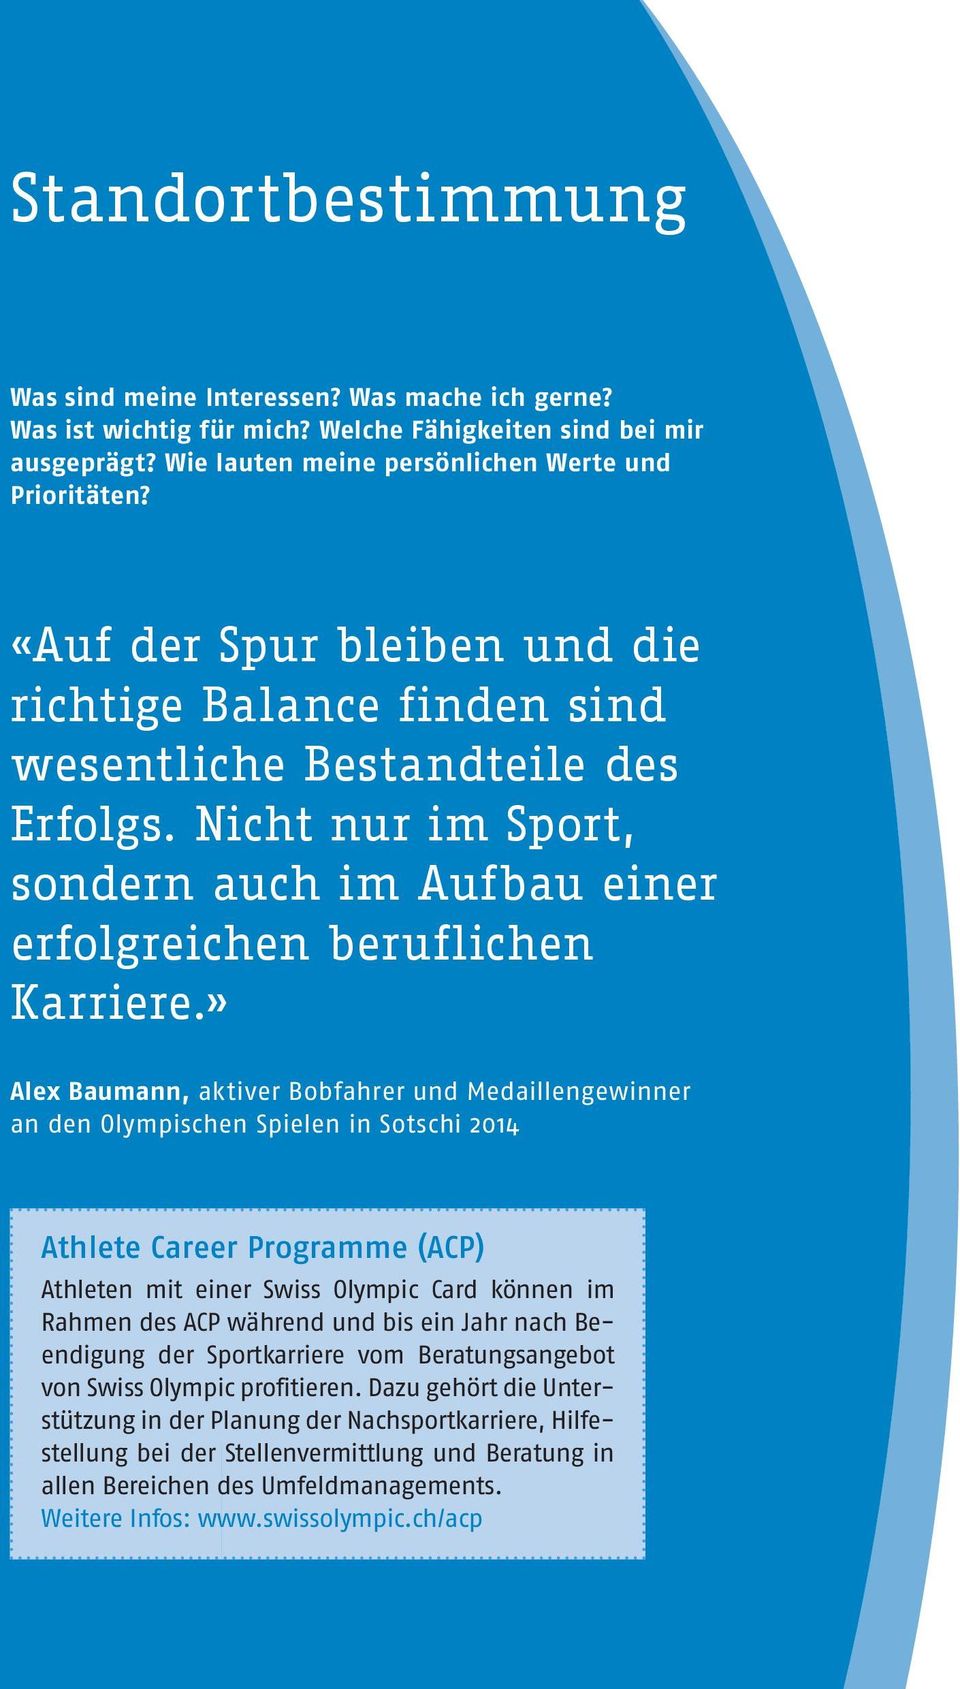 » Alex Baumann, aktiver Bobfahrer und Medaillengewinner an den Olympischen Spielen in Sotschi 2014 Athlete Career Programme (ACP) Athleten mit einer Swiss Olympic Card können im Rahmen des ACP